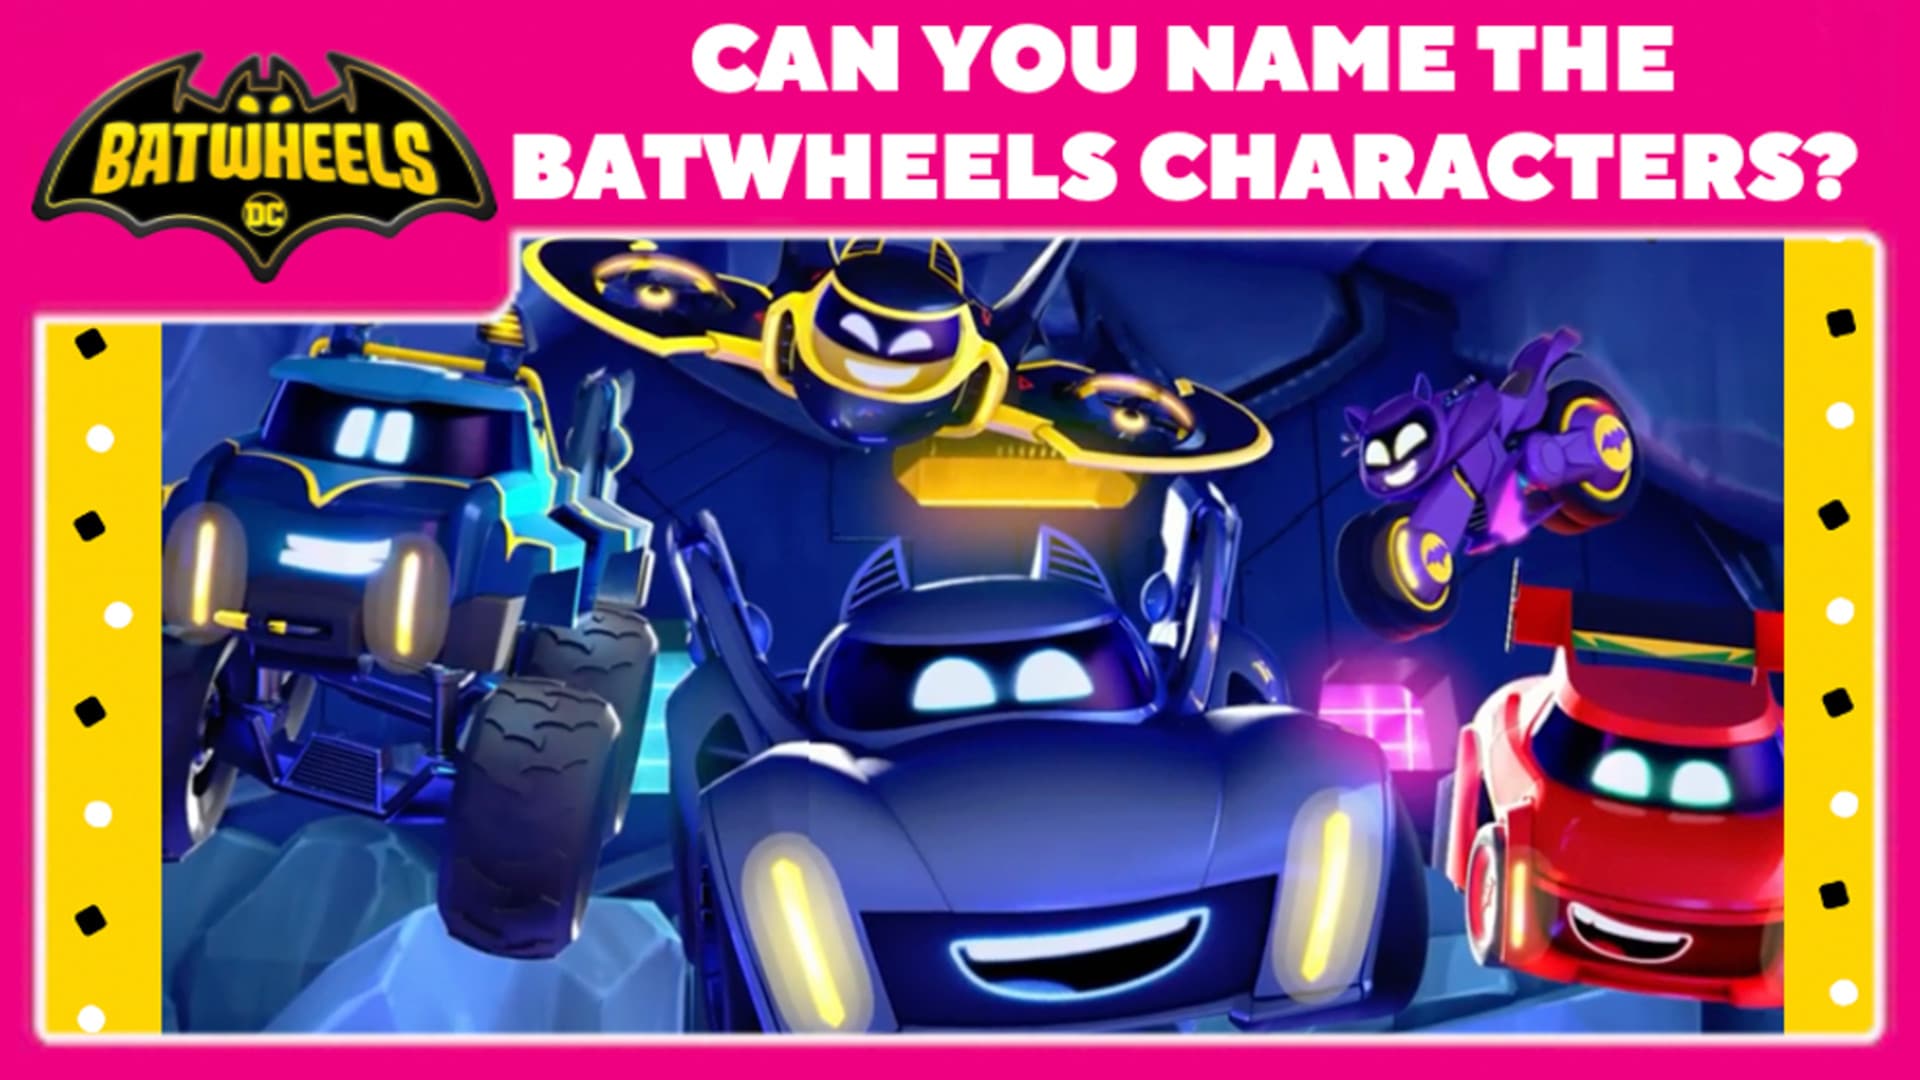 Name the Batwheels